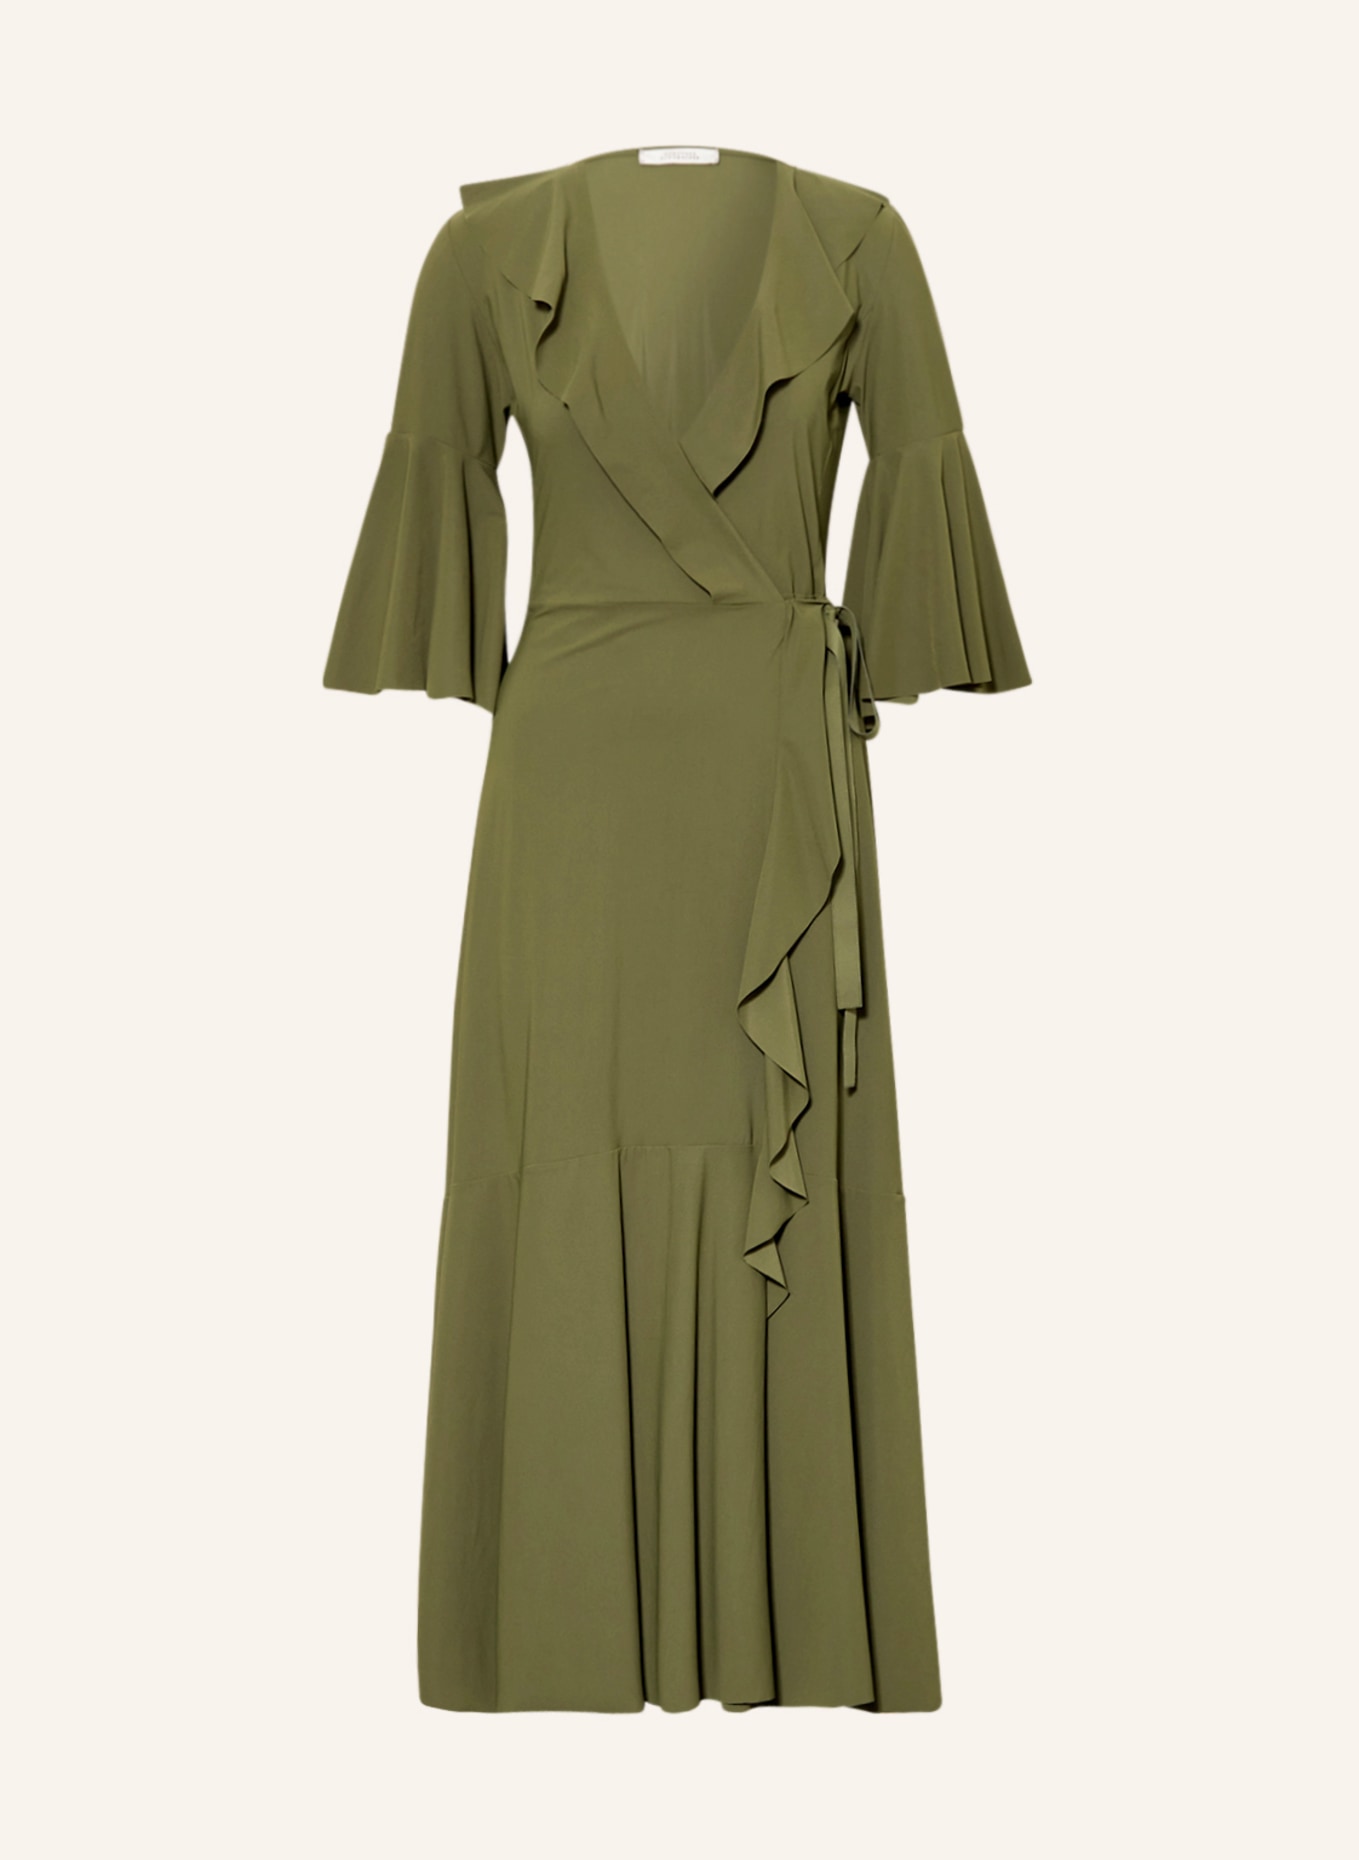 DOROTHEE SCHUMACHER Wickelkleid mit 3/4-Arm, Farbe: OLIV (Bild 1)